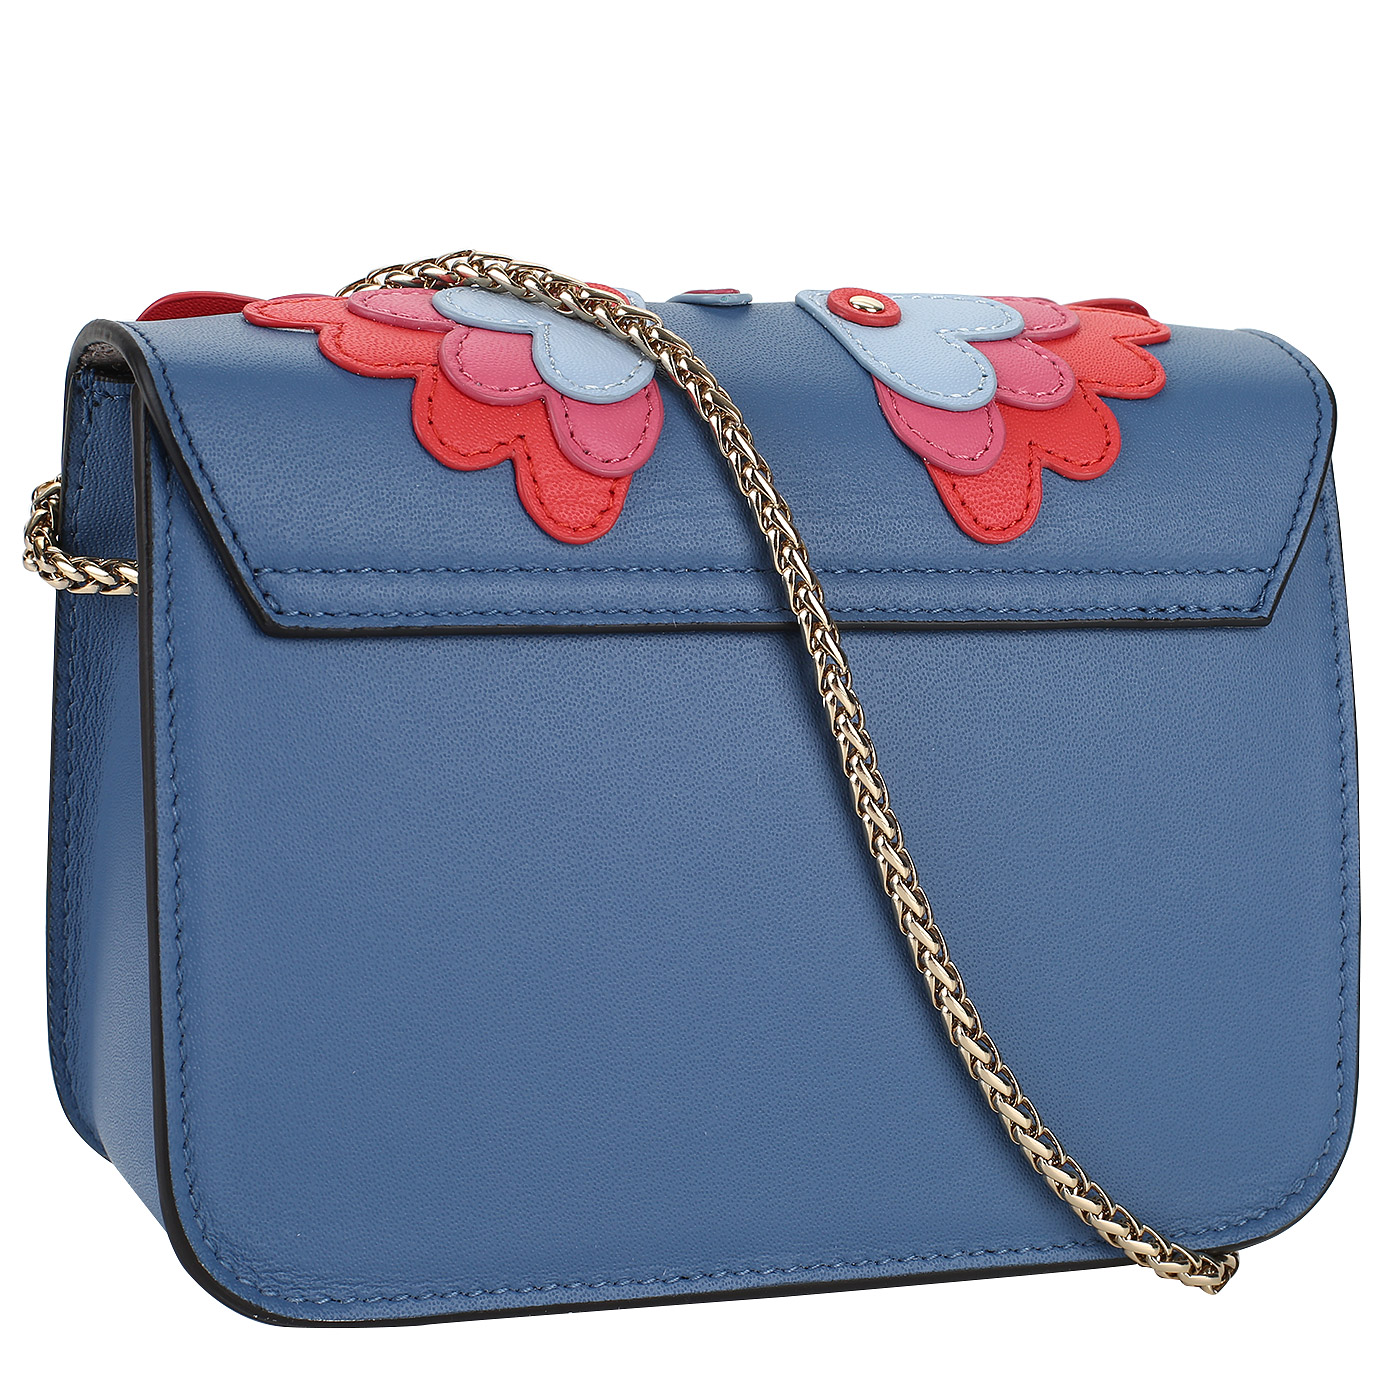 Кожаная сумочка с аппликацией Furla Metropolis Papillon